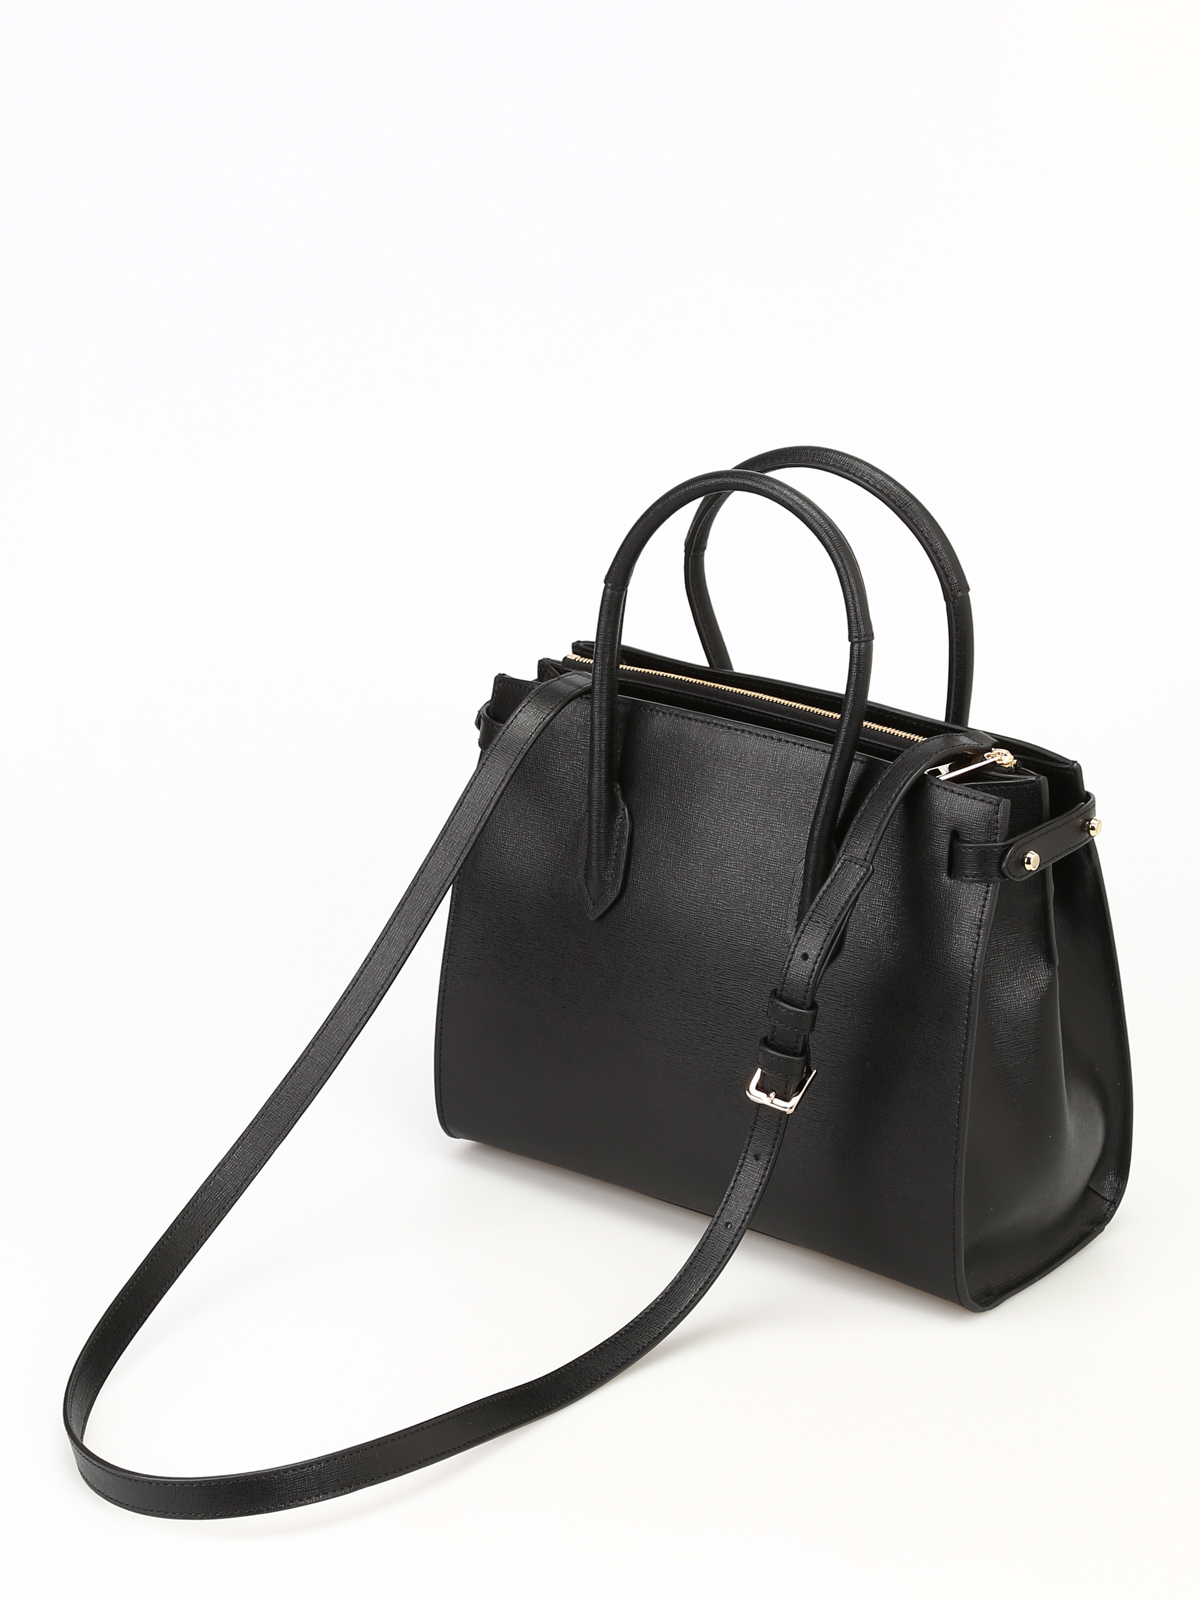 Totes bags Furla - Pin S black saffiano leather tote - PINMTOTE9422